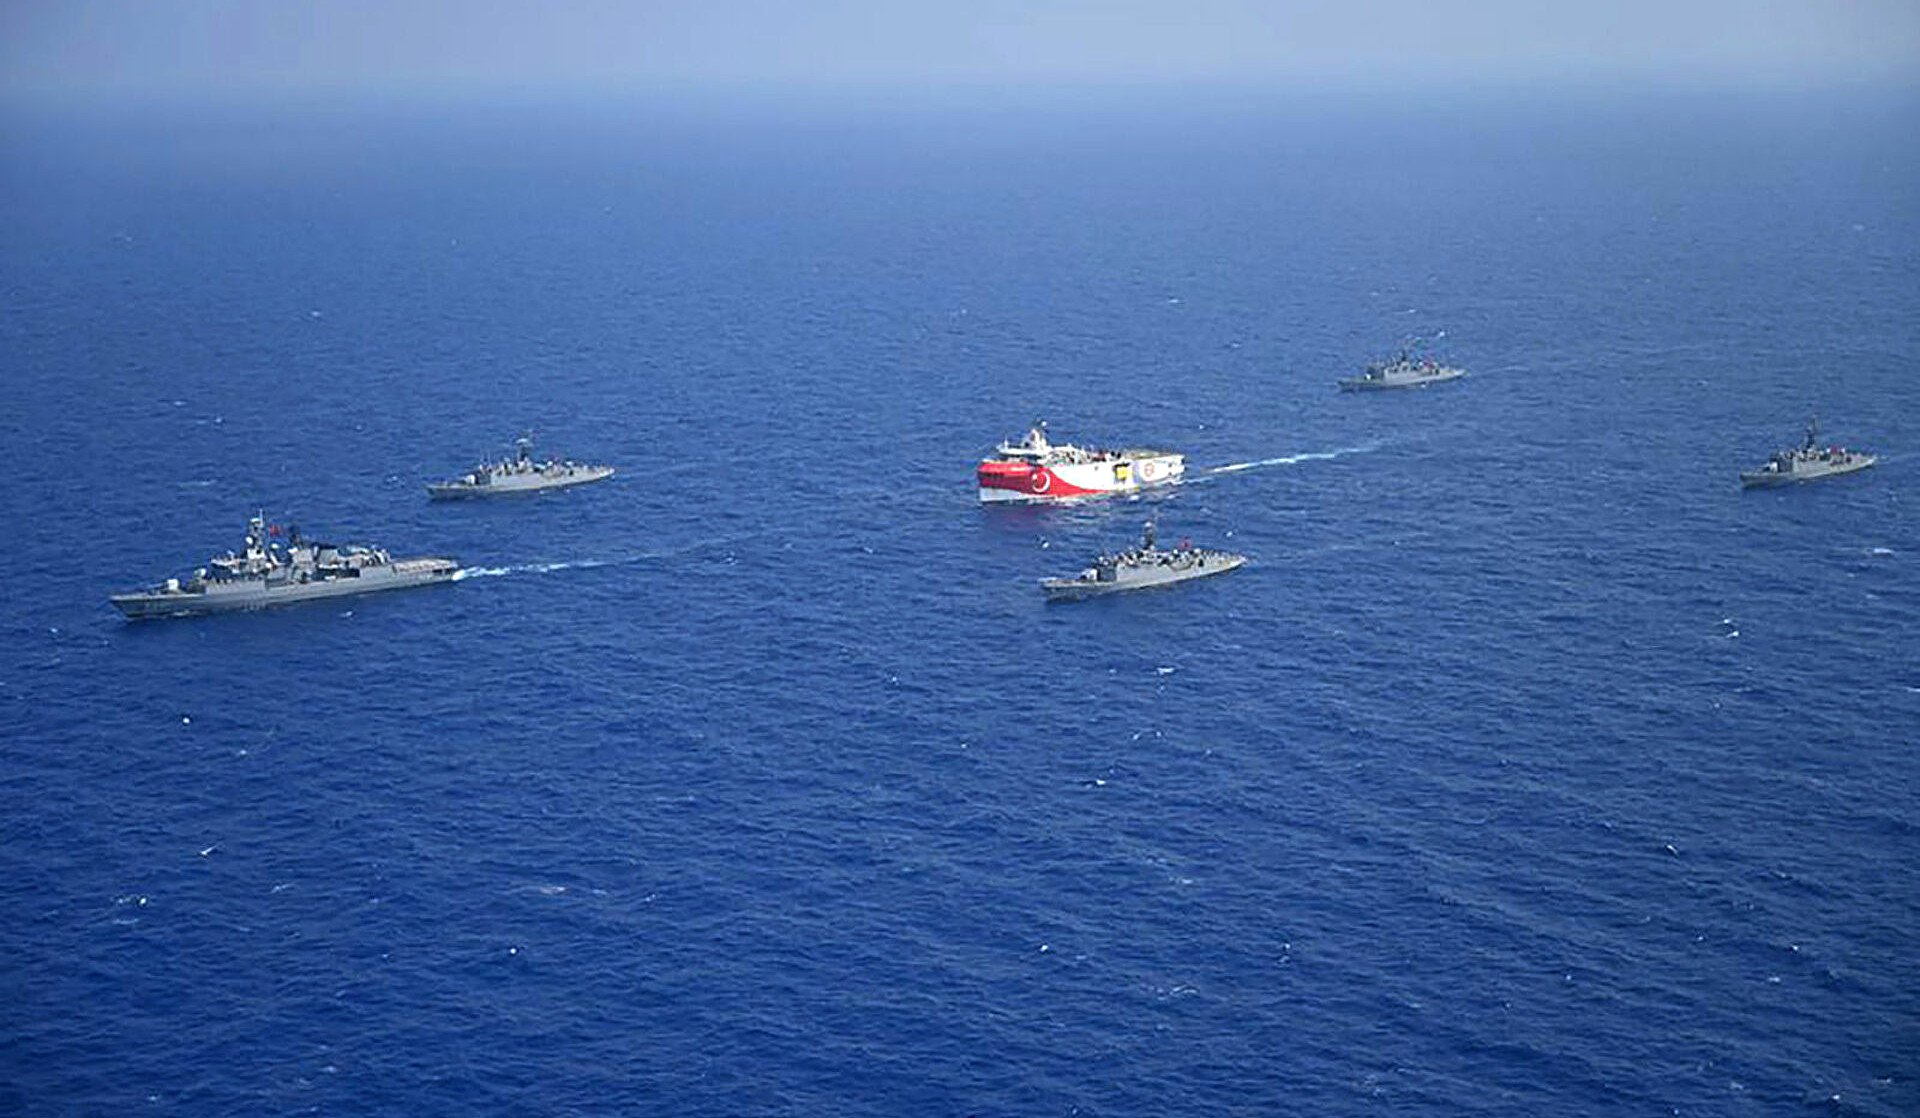 Թուրքիան հայտարարել է Միջերկրական ծովում «Արևելյան Ակդենիզ 2021» ռազմածովային զորավարժությունների մեկնարկի մասին